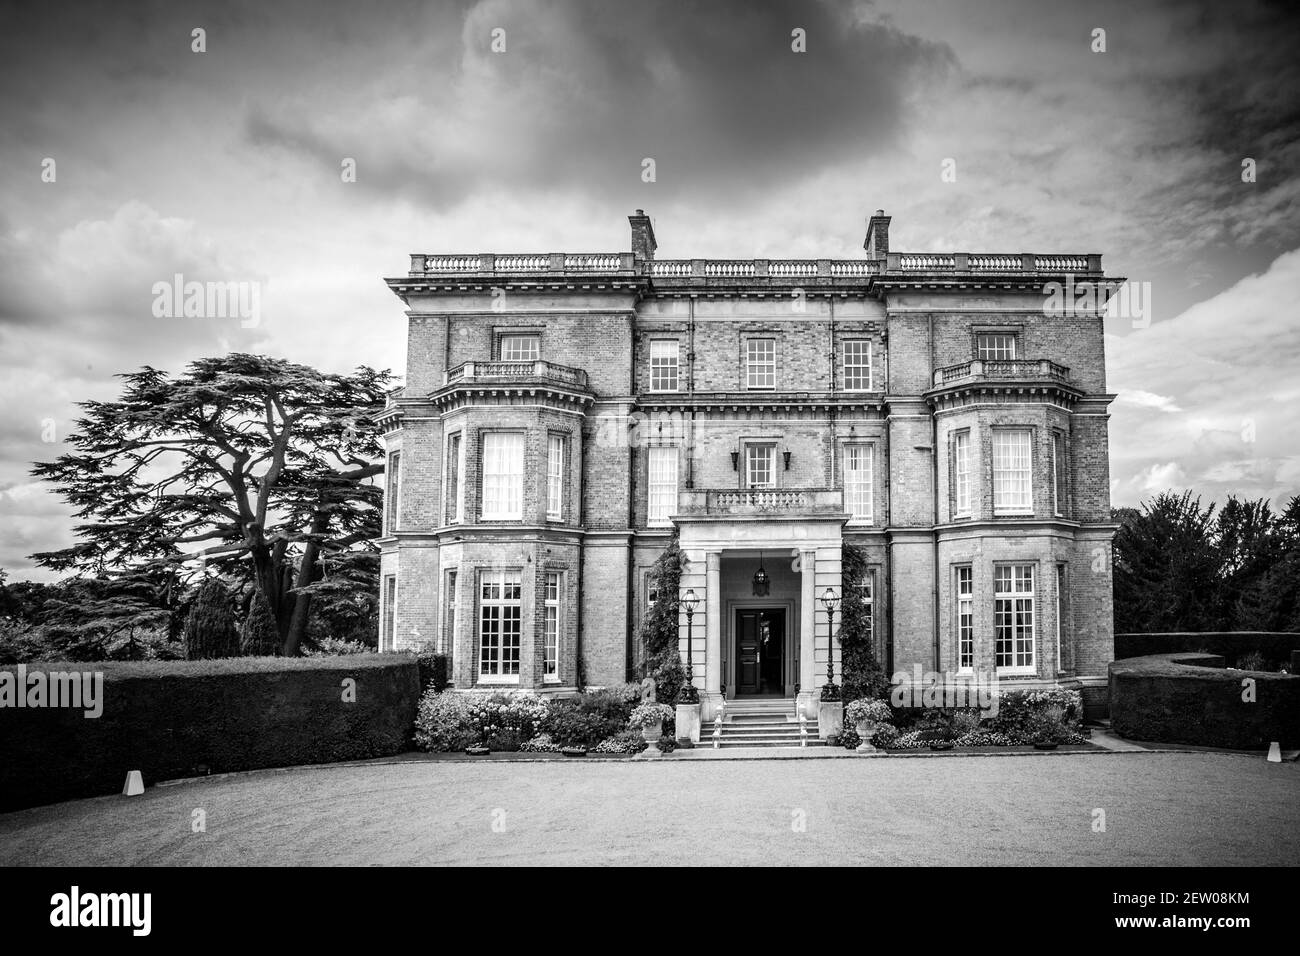 Hedsor House è un palazzo in stile georgiano nel Regno Unito, situato a Hedsor, Buckinghamshire, Inghilterra. Foto Stock